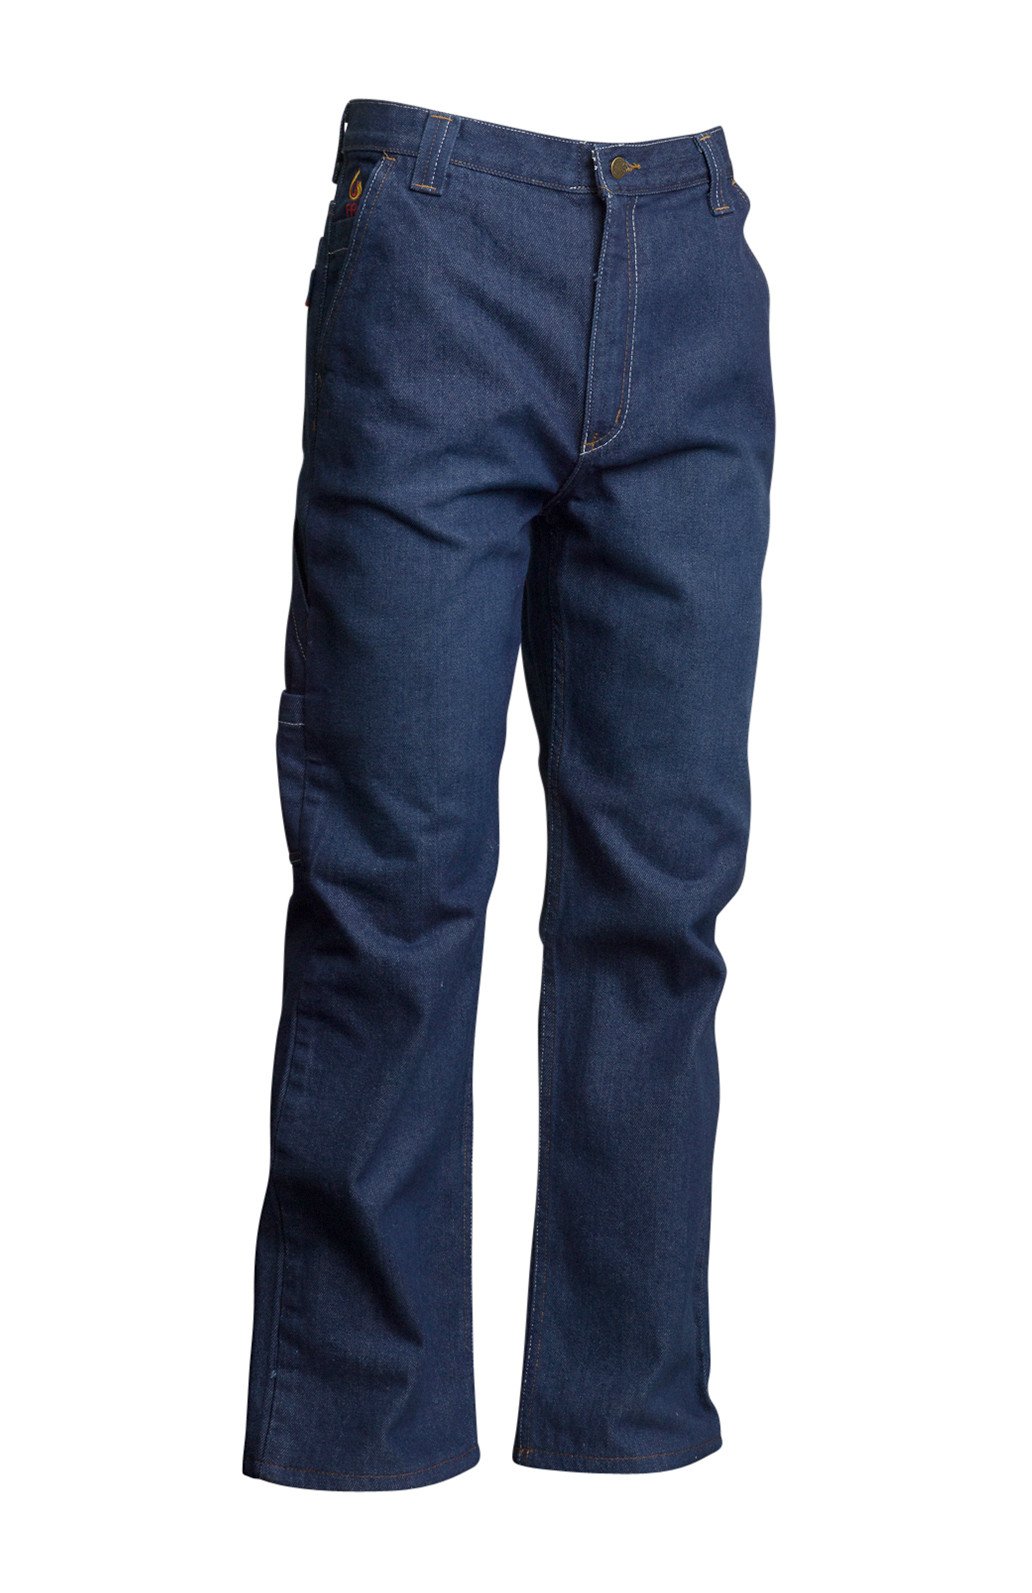 LAPCO - FR Carpenter Denim Jeans #P-INDC-AGI